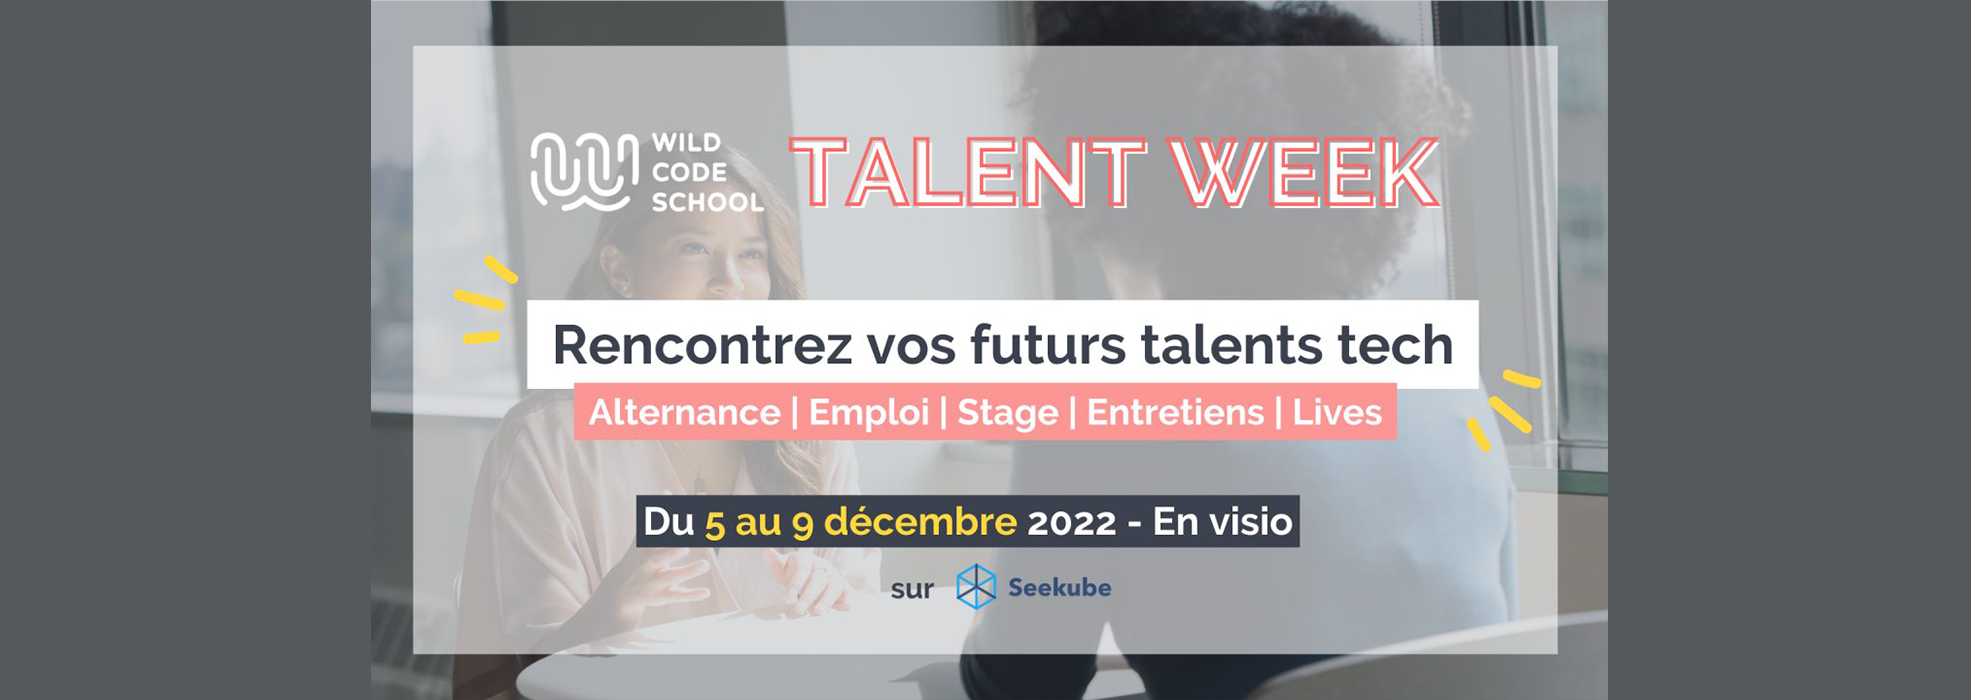 Bannière Talent Week 2022